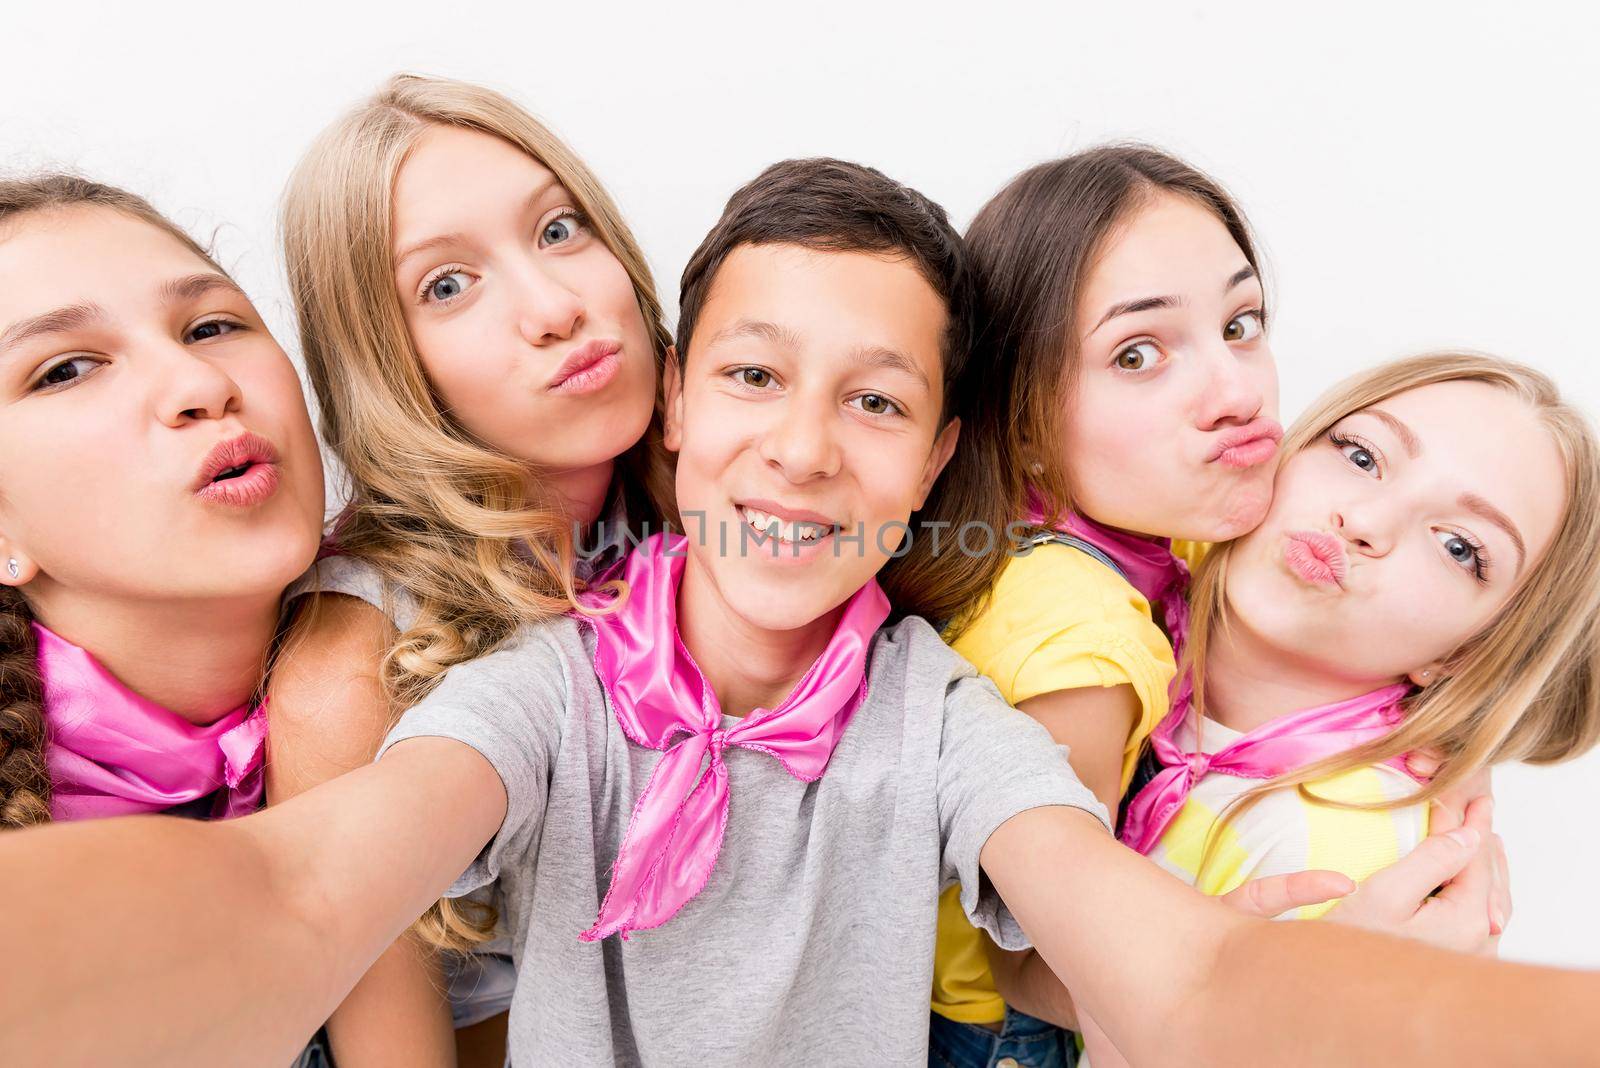 boy making selfie with cute girls by GekaSkr